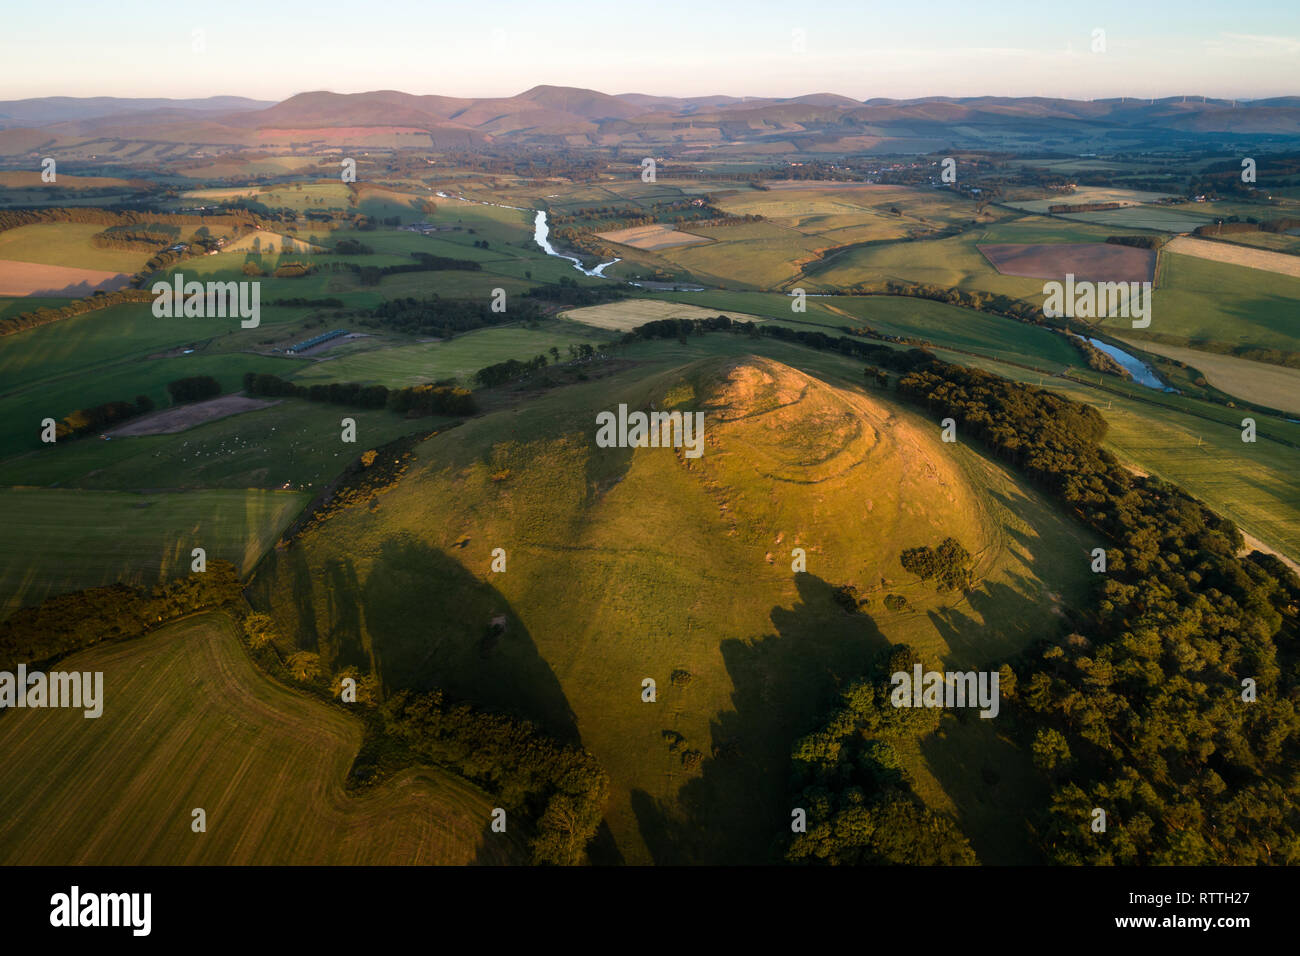 Immagine aerea che mostra il neolitico colle fortificato sulla cima di legge Quathquan vicino alla città di Biggar in South Lanarkshire. Foto Stock